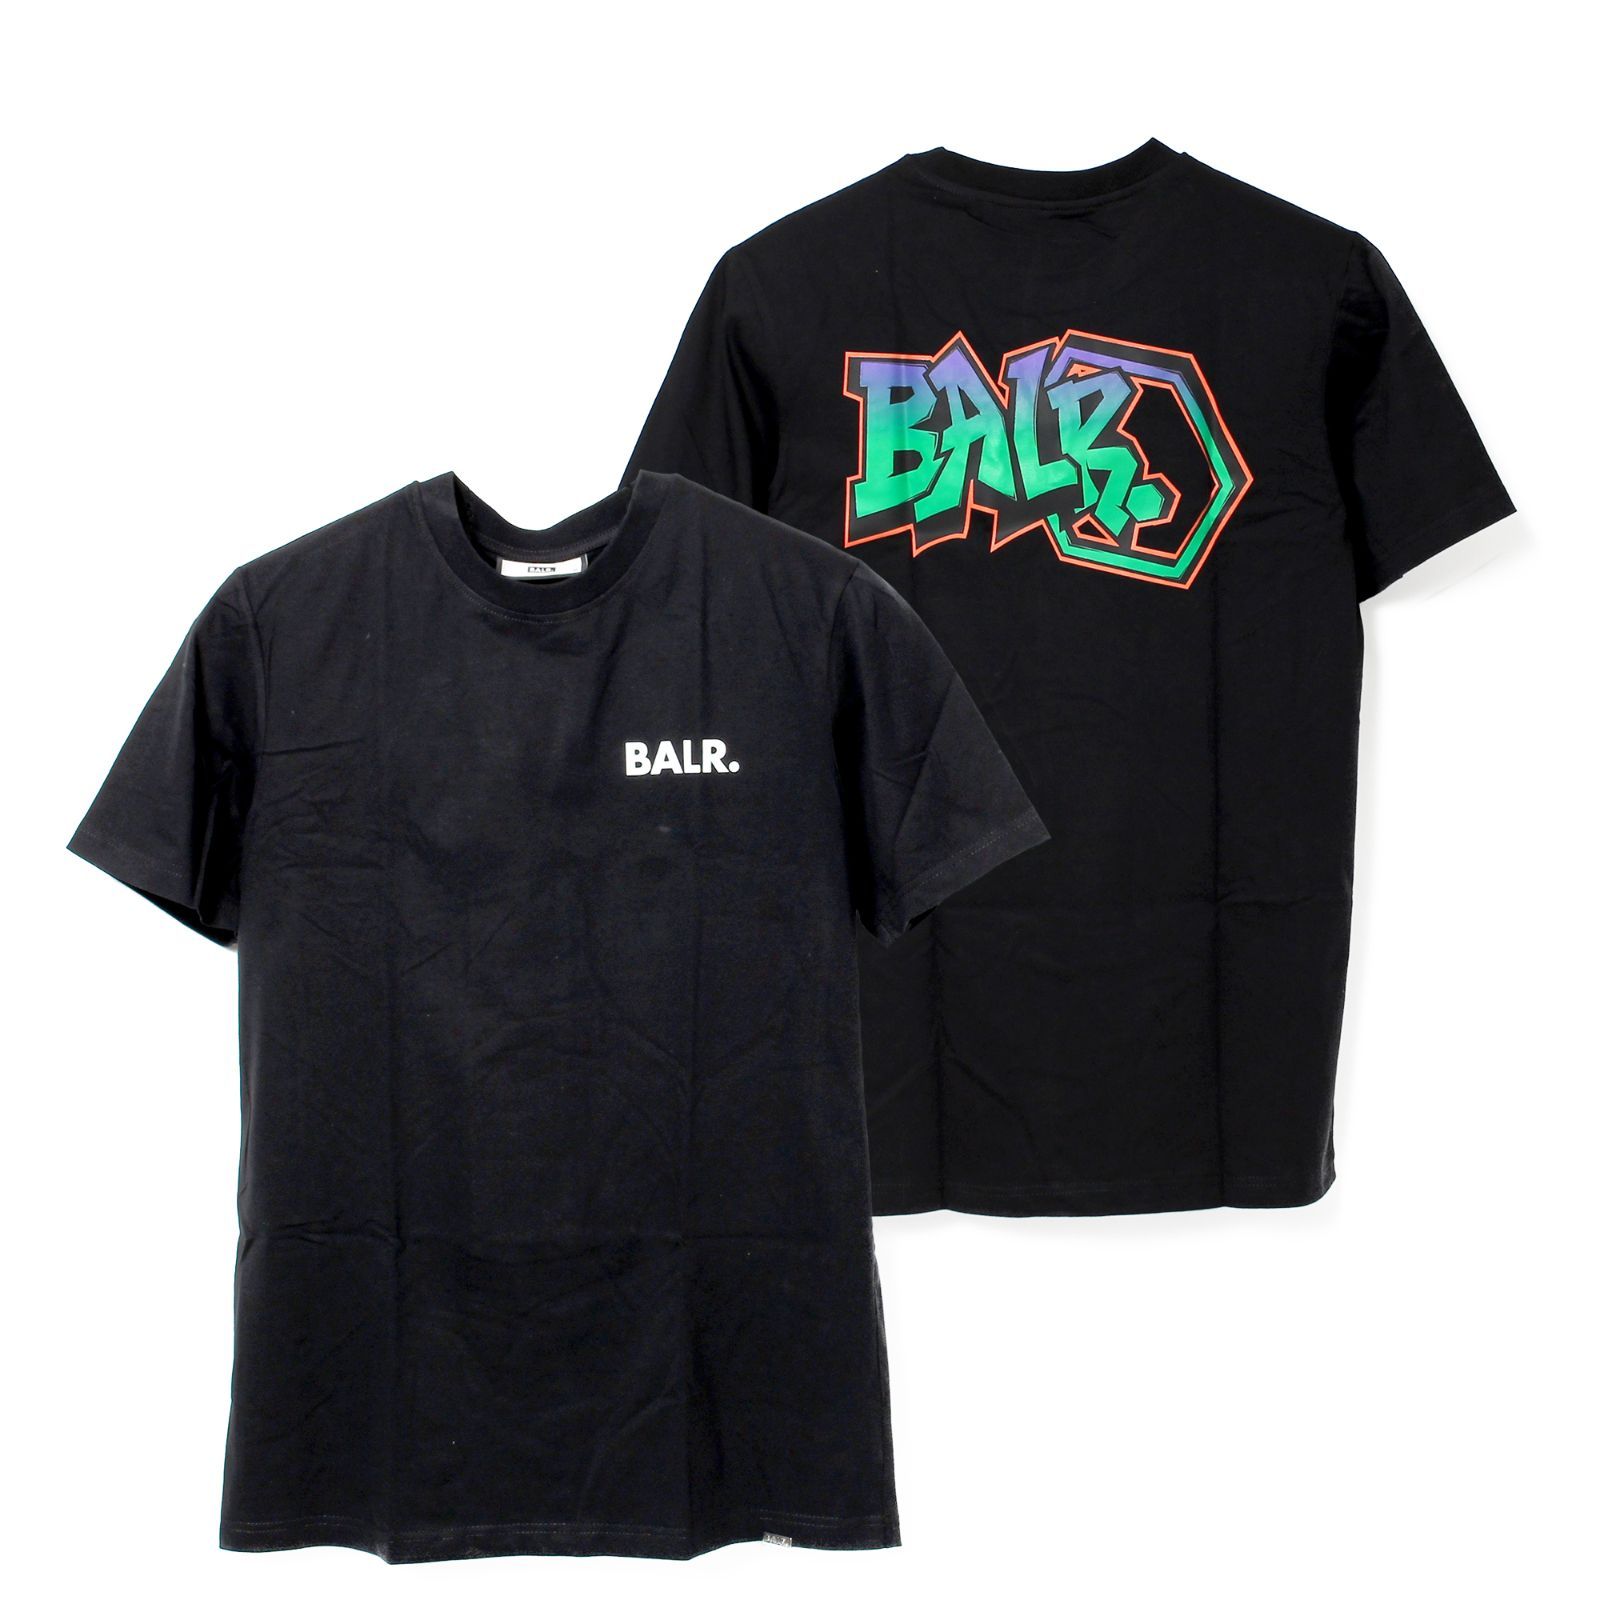 【新品未使用】 BALR. ボーラー OLAF STRAIGHT GRAFFITI T-SHIRT Tシャツ 半袖 カットソー コットン B11121170 【Sサイズ/JET BLACK】